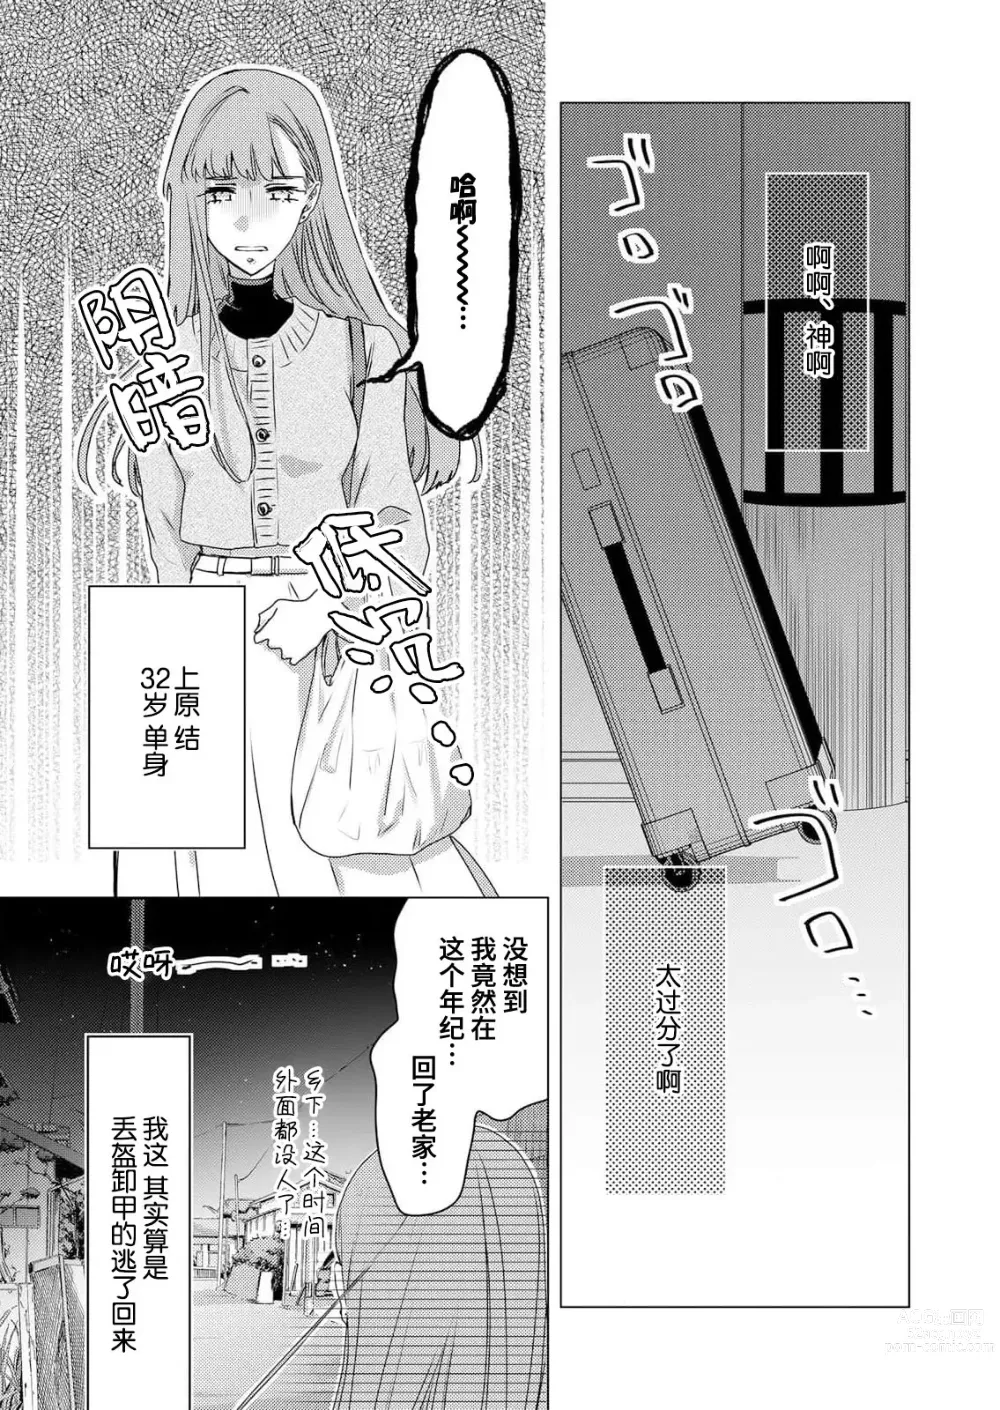 Page 2 of manga 嫉妒心很强的结缘神…。连身心都被执拗地所爱